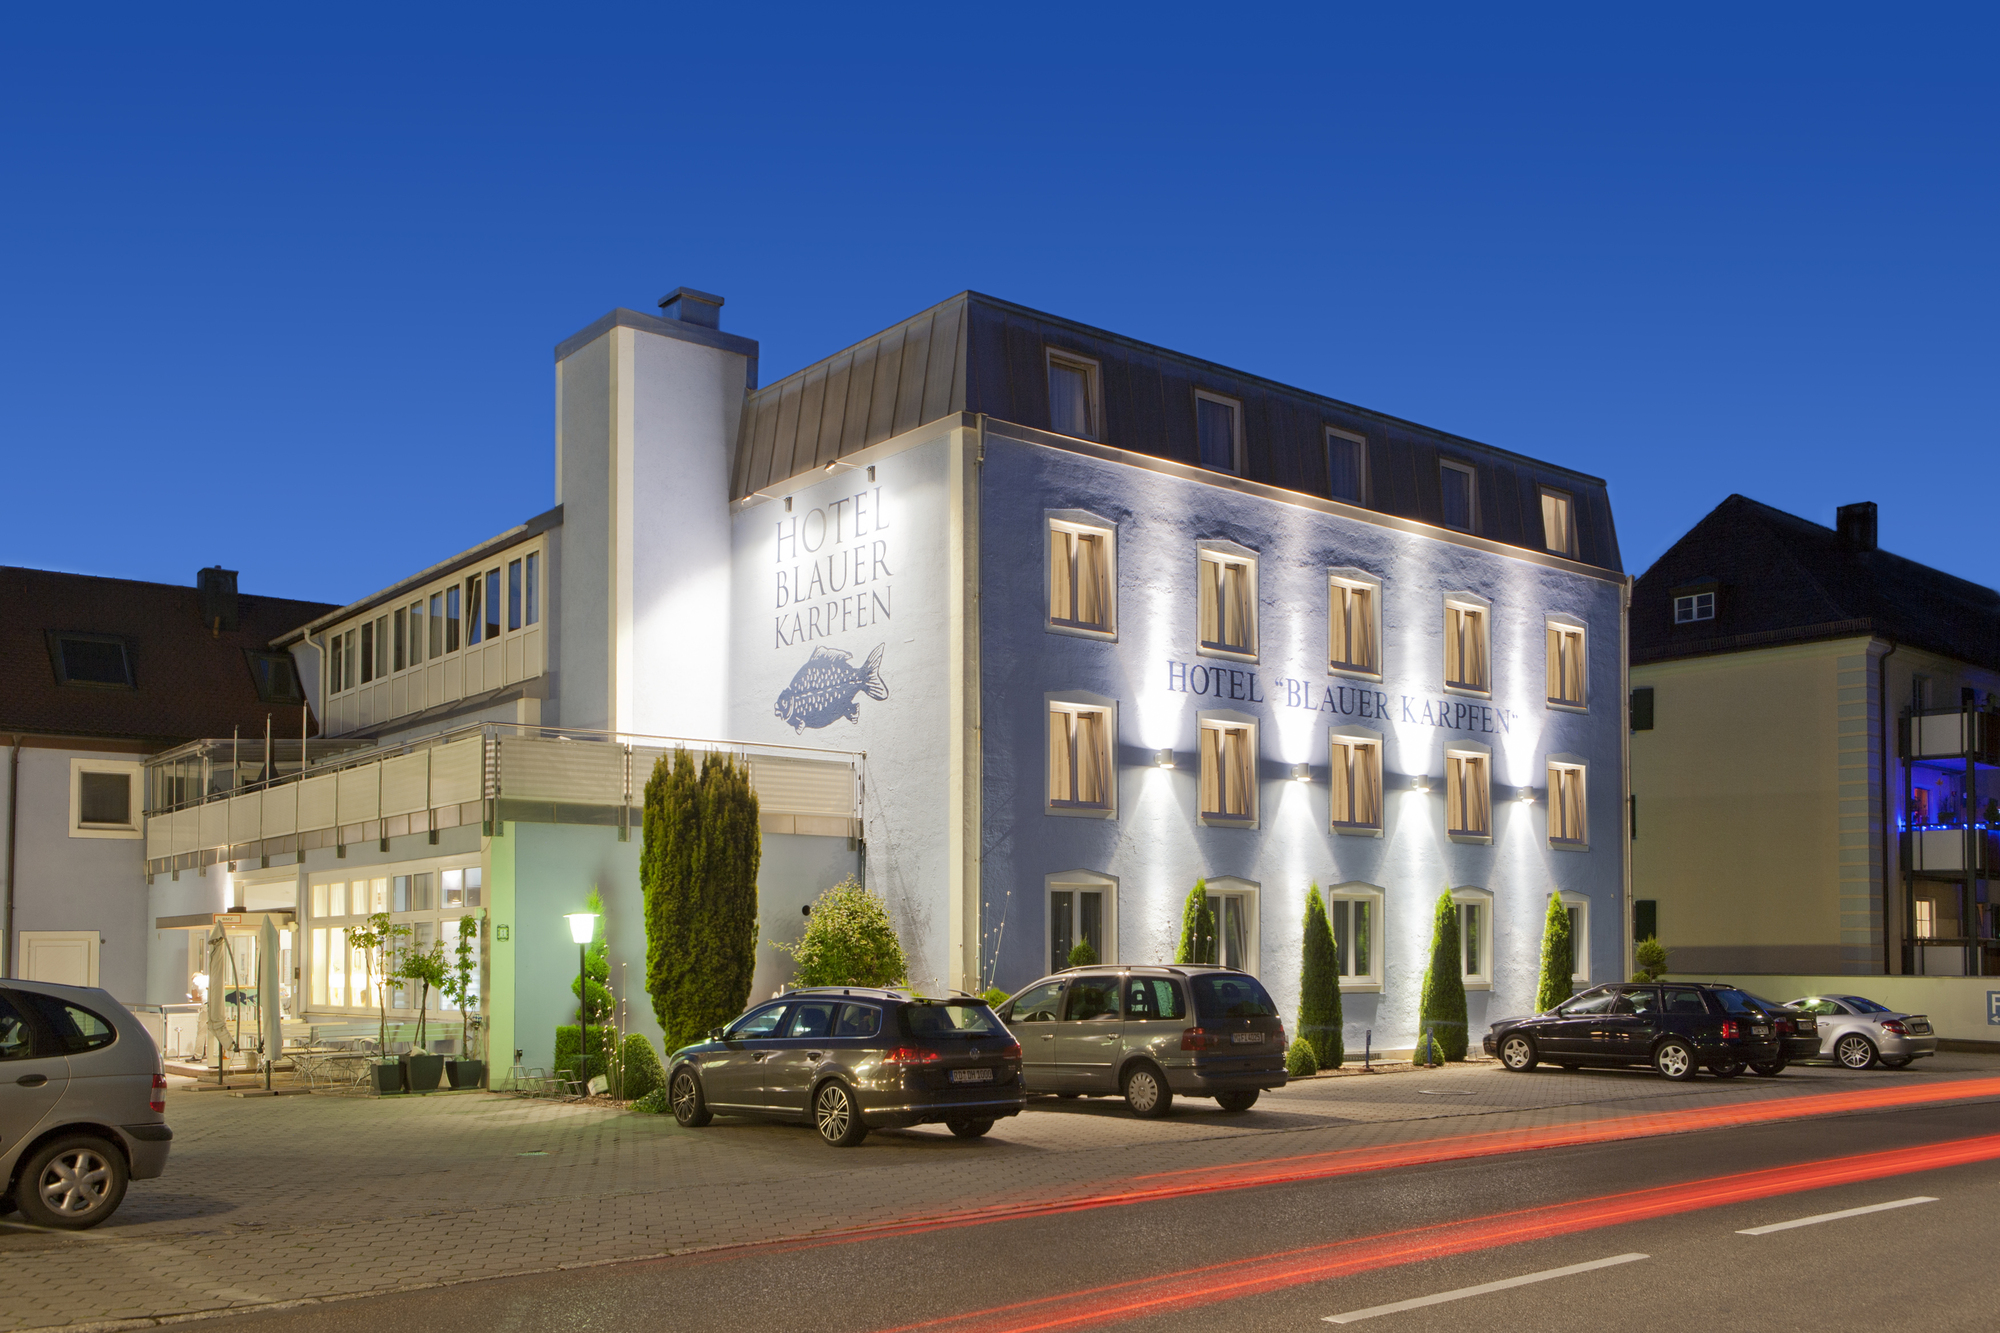 Das Ausflugshotel blauer Karpfen, Oberschleißheim bei München